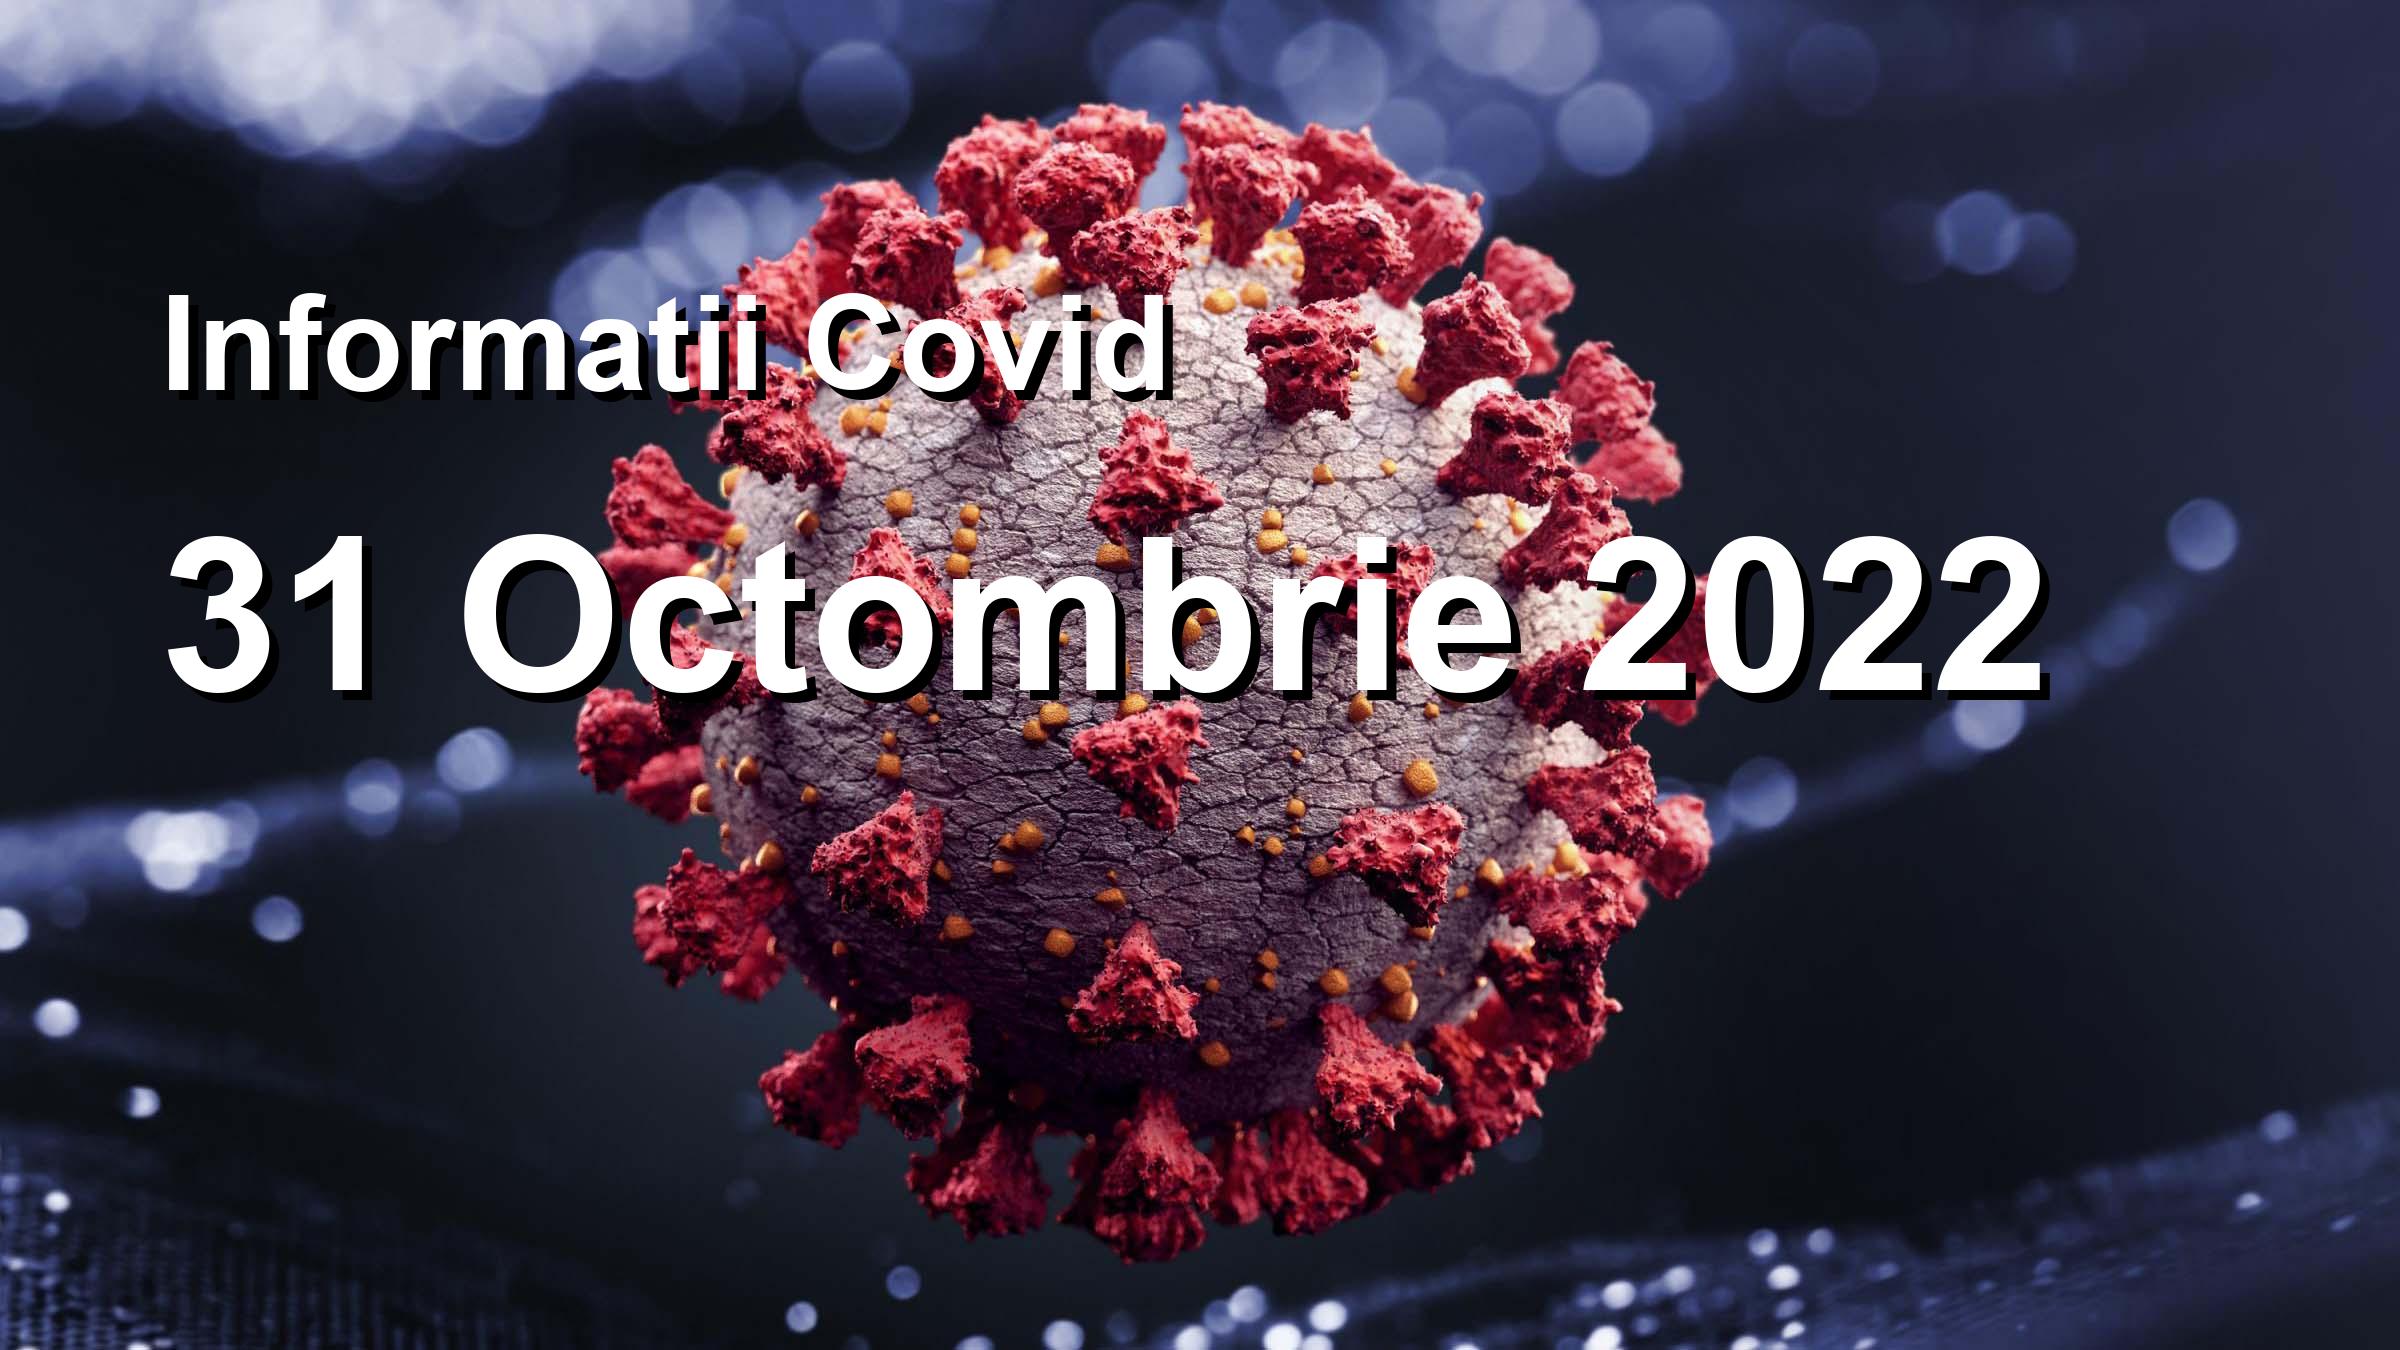 Informatii Covid-19 pentru 31 Octombrie 2022: 341 infectari, 7053 teste. | Coronavirus Romania